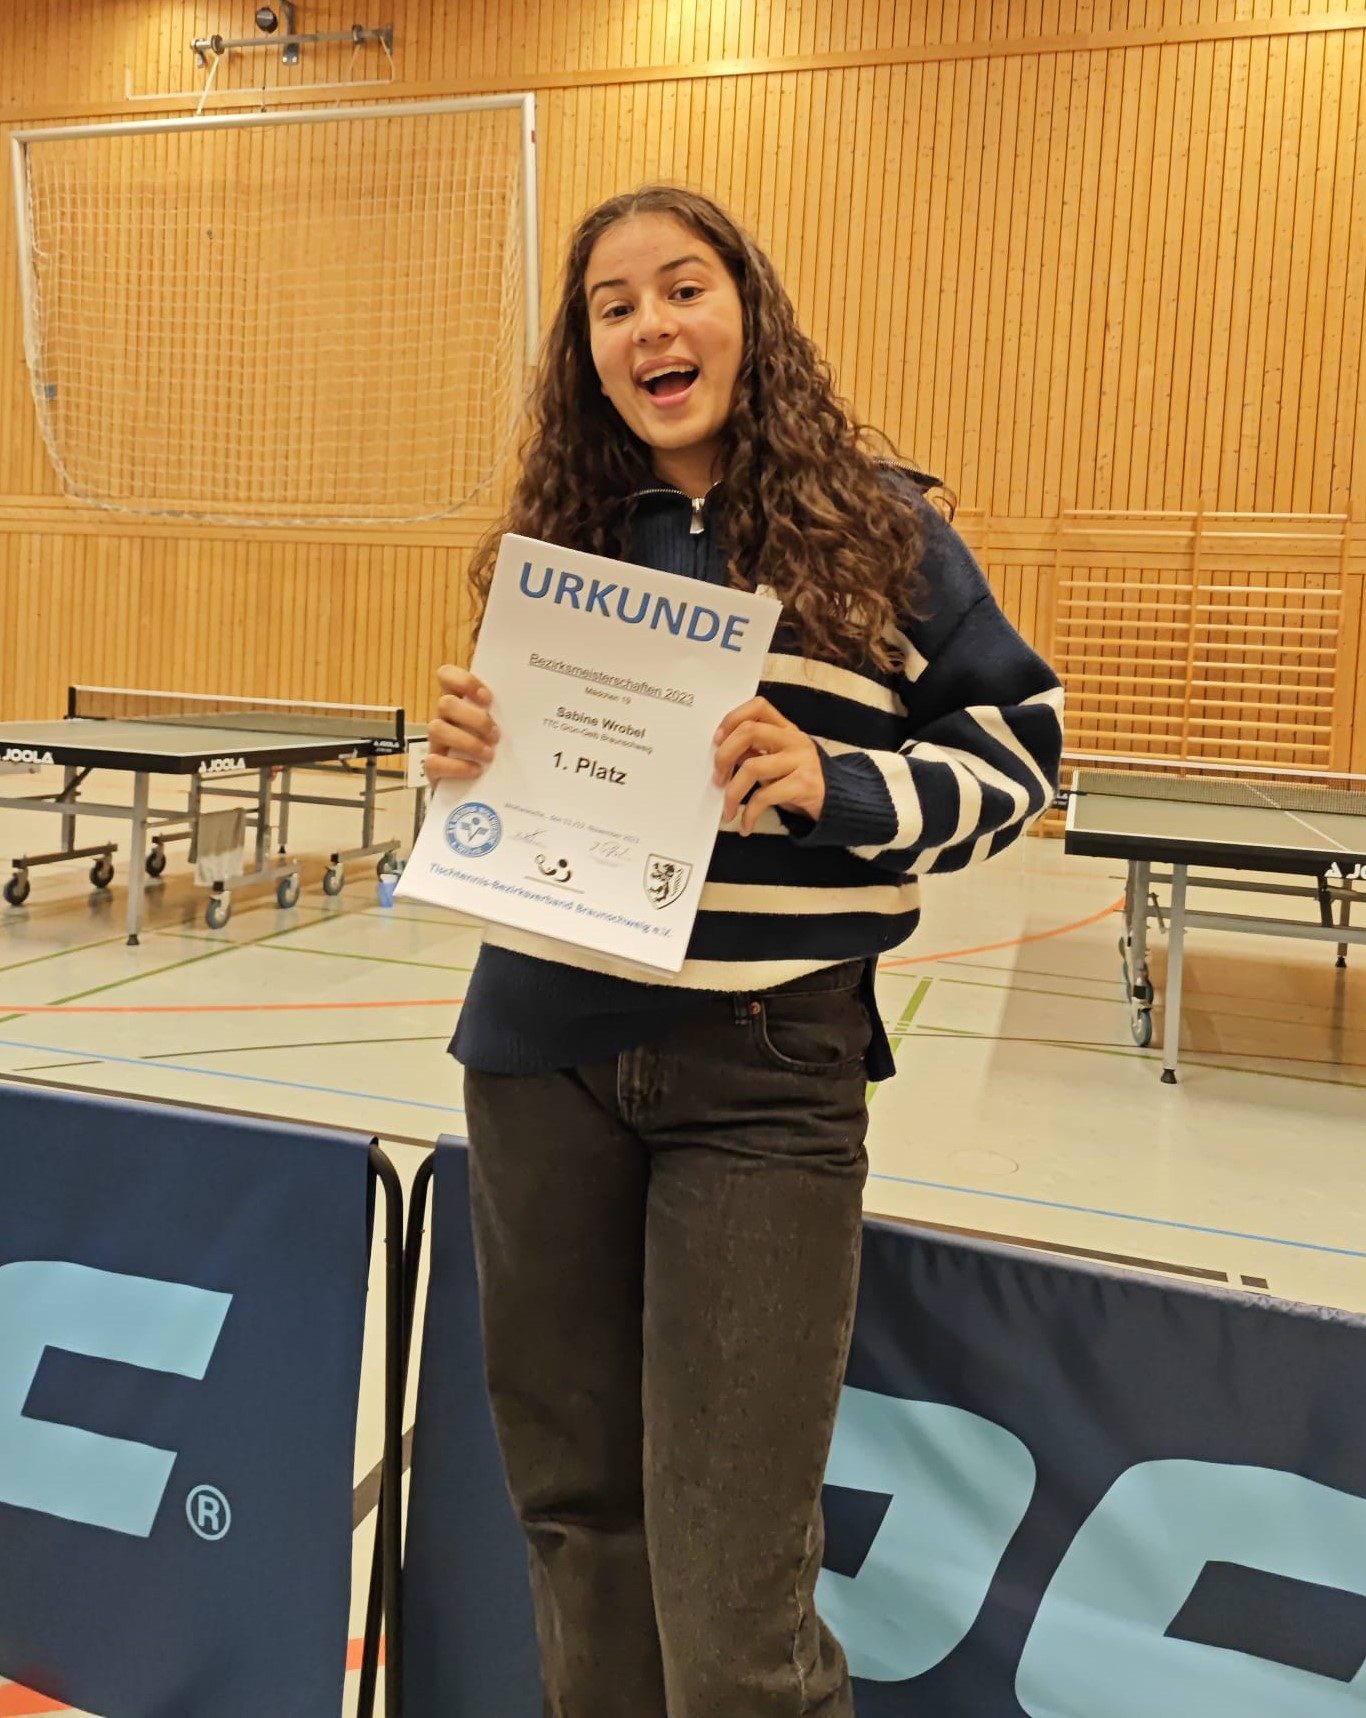 Bezirksindividualmeisterschaften der Jugend in Woltwiesche – Sabine räumt ab (updated)